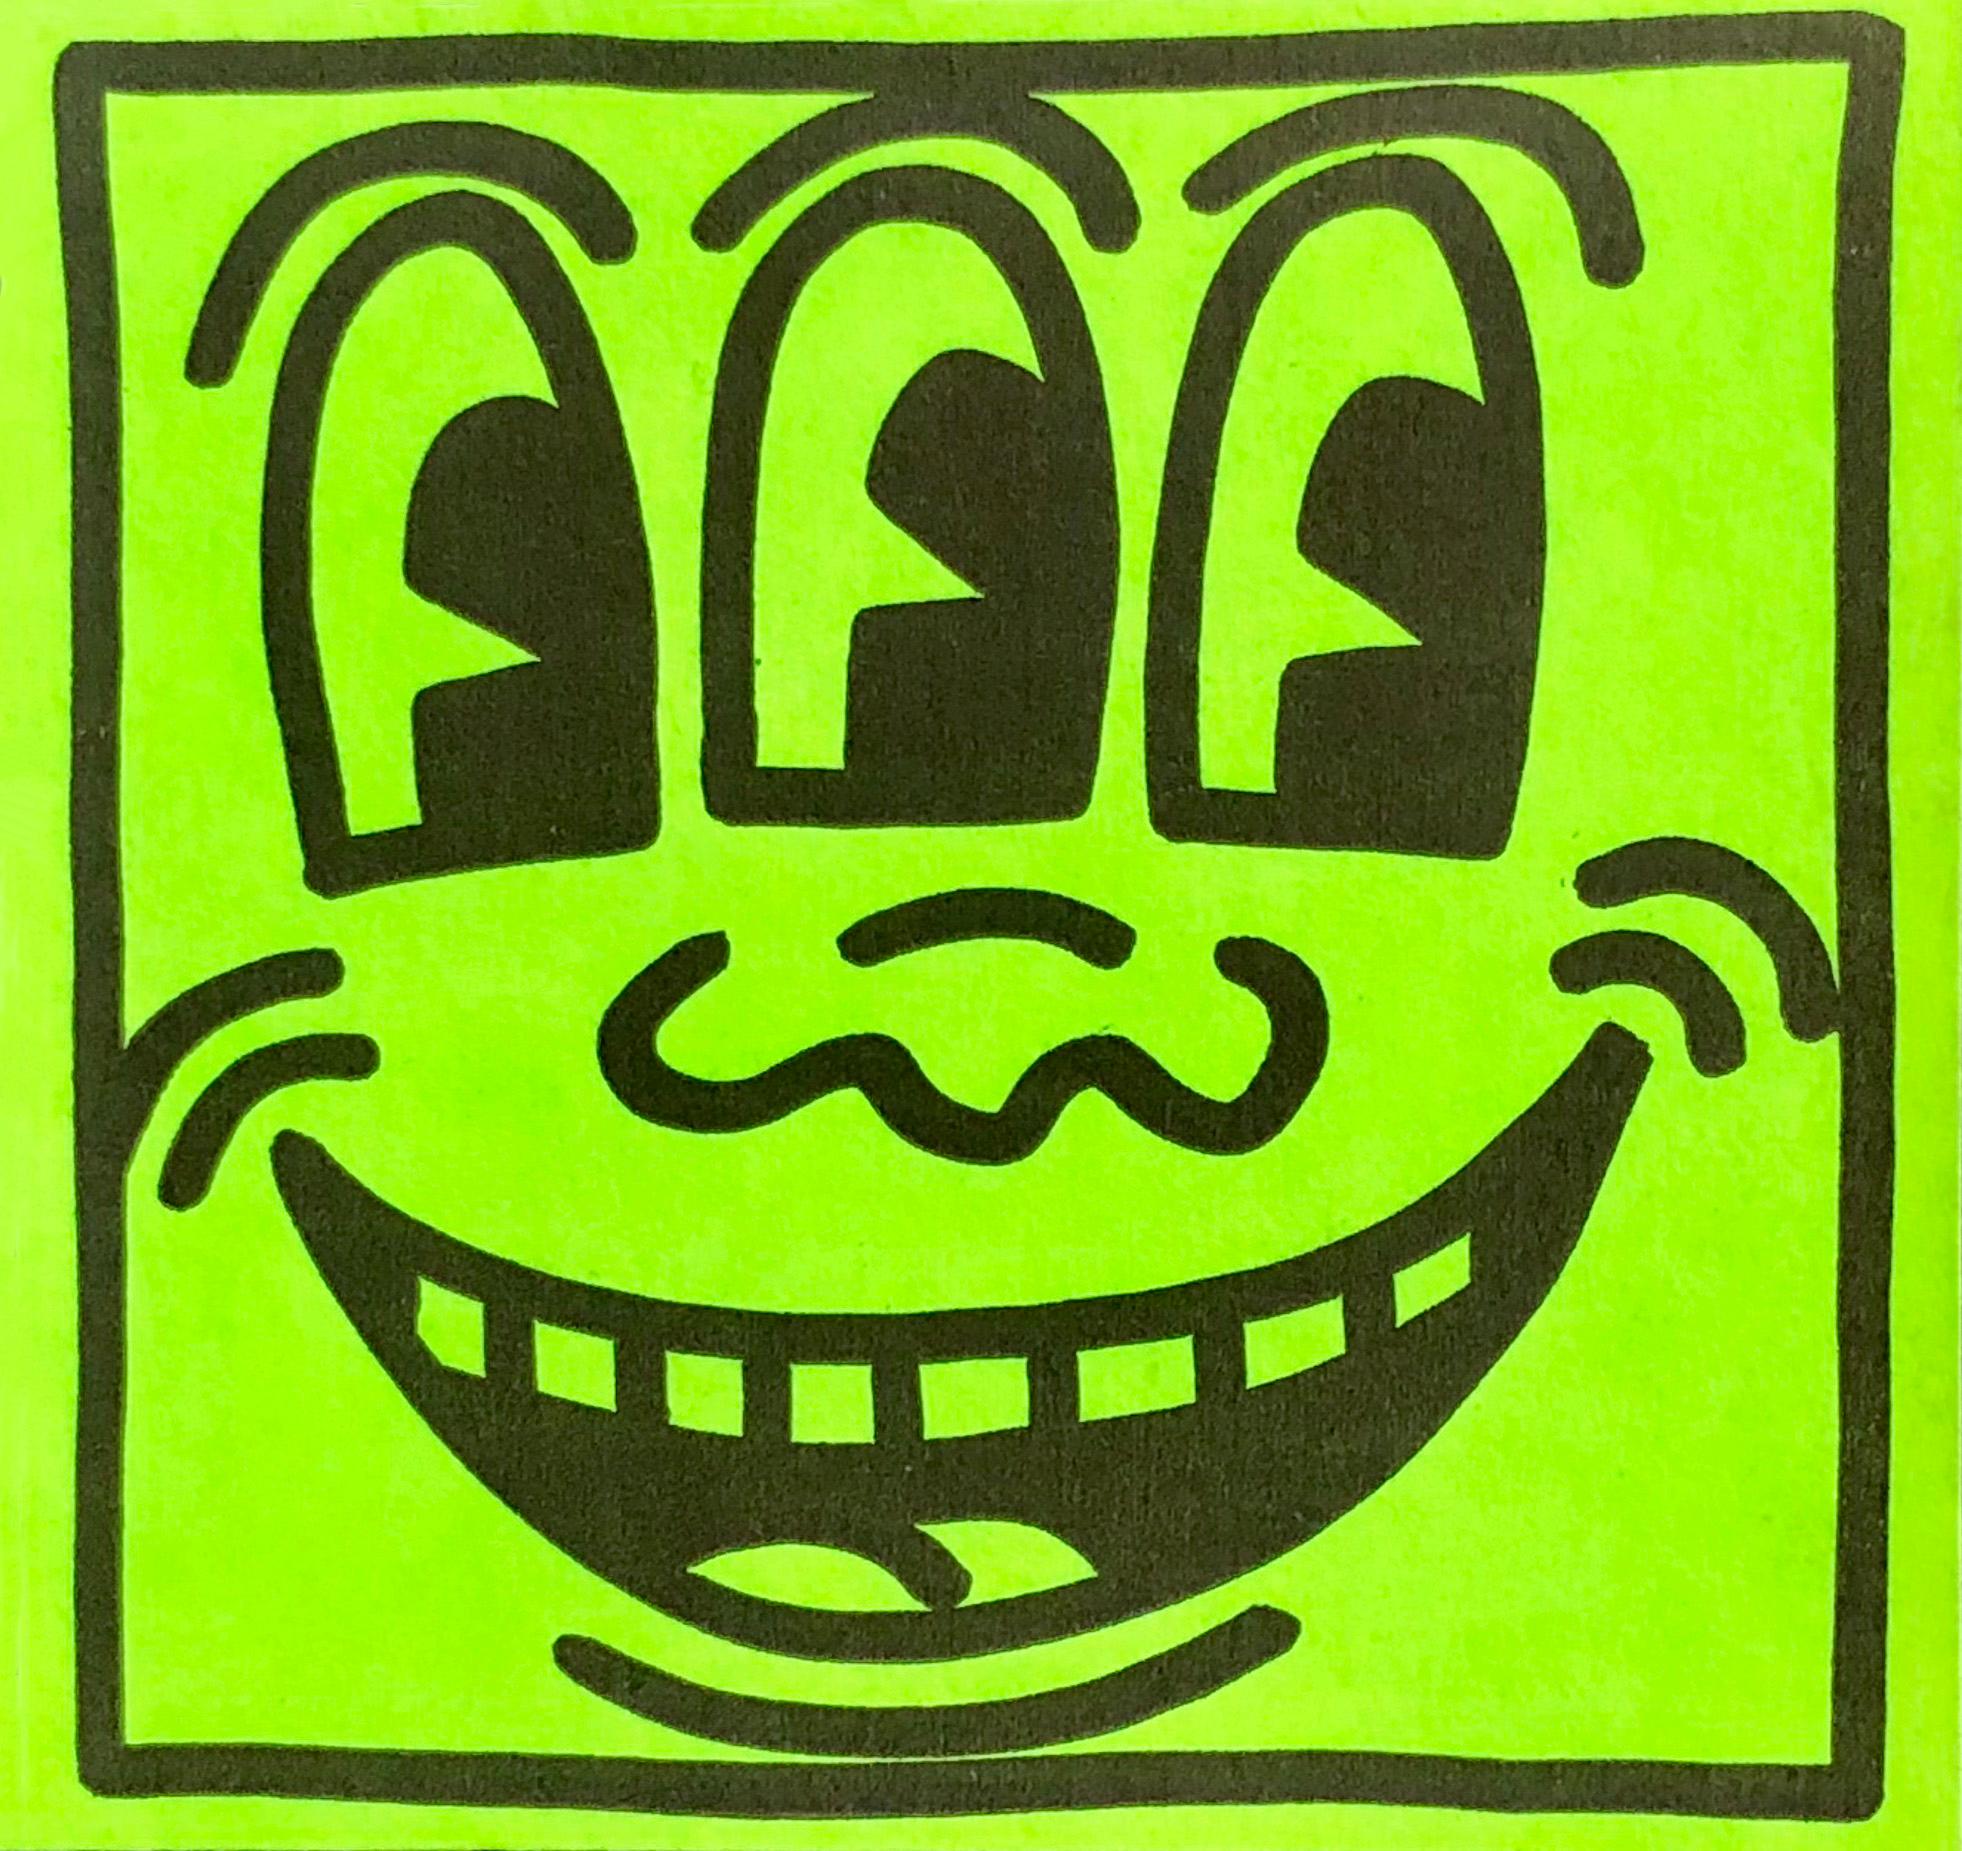 Keith Haring Three Eyed Smiling Aufkleber ca. 1982: Ein zeitloses Sammlerstück von Keith Haring, das ursprünglich bei der ersten Einzelausstellung von Haring im Jahr 1982 verteilt und später in Harings Pop Shop Mitte der 1980er Jahre verkauft wurde.